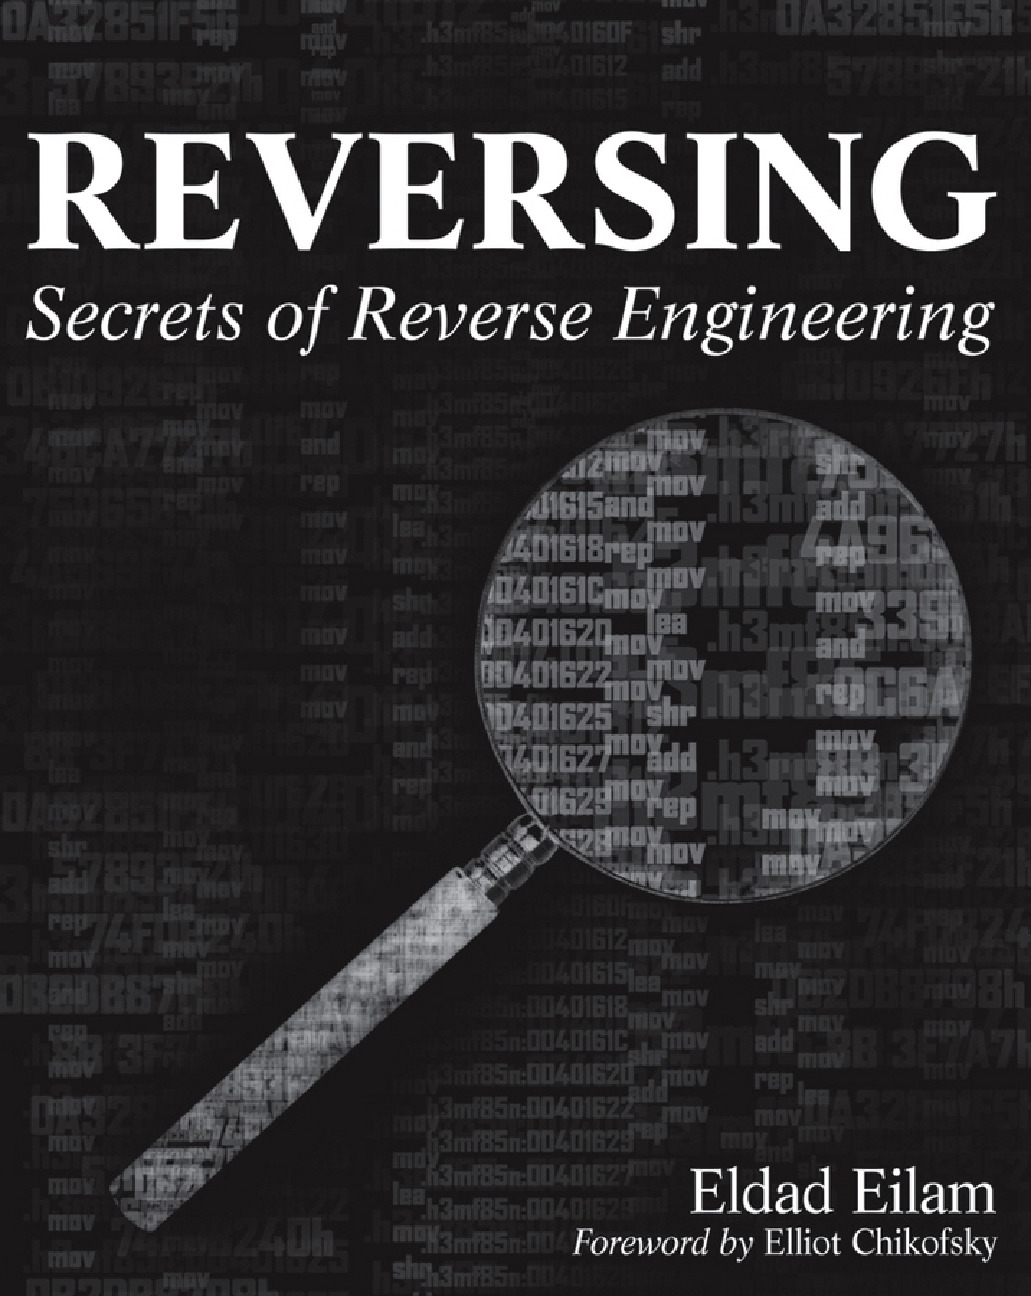 36. Eldad Eilam – Reversing- Secrets of Reverse Engineering – Wiley 2005